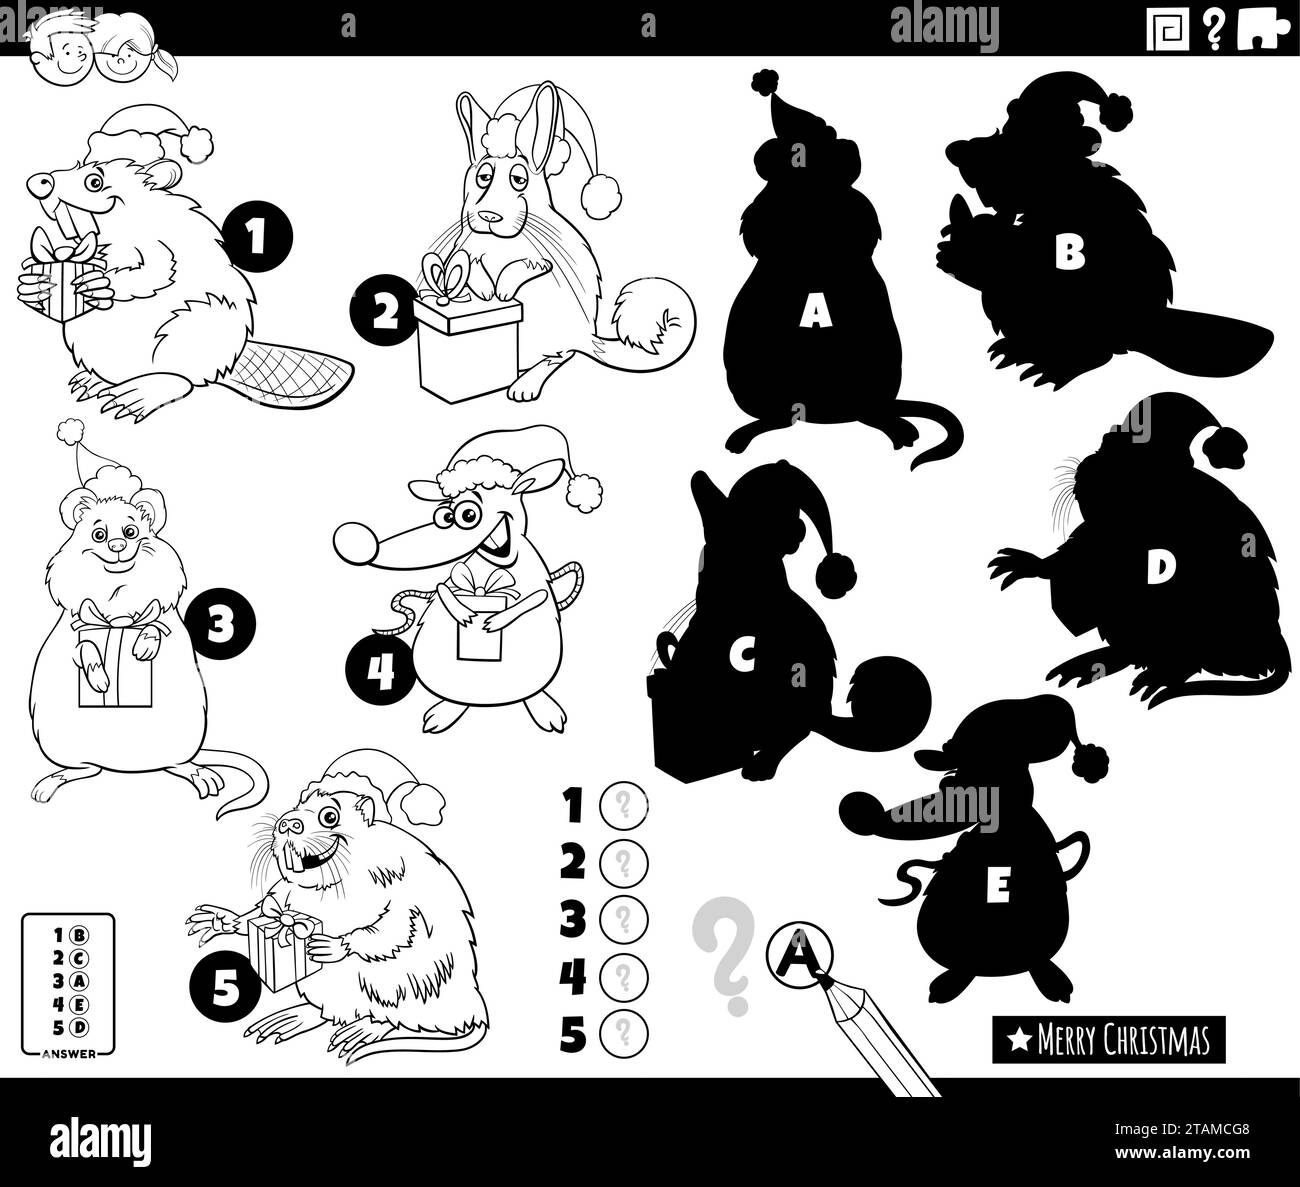 Illustrazione di cartoni animati che mostra come trovare le ombre giuste per il gioco educativo di immagini con personaggi di animali comici sulla pagina da colorare Natale Illustrazione Vettoriale